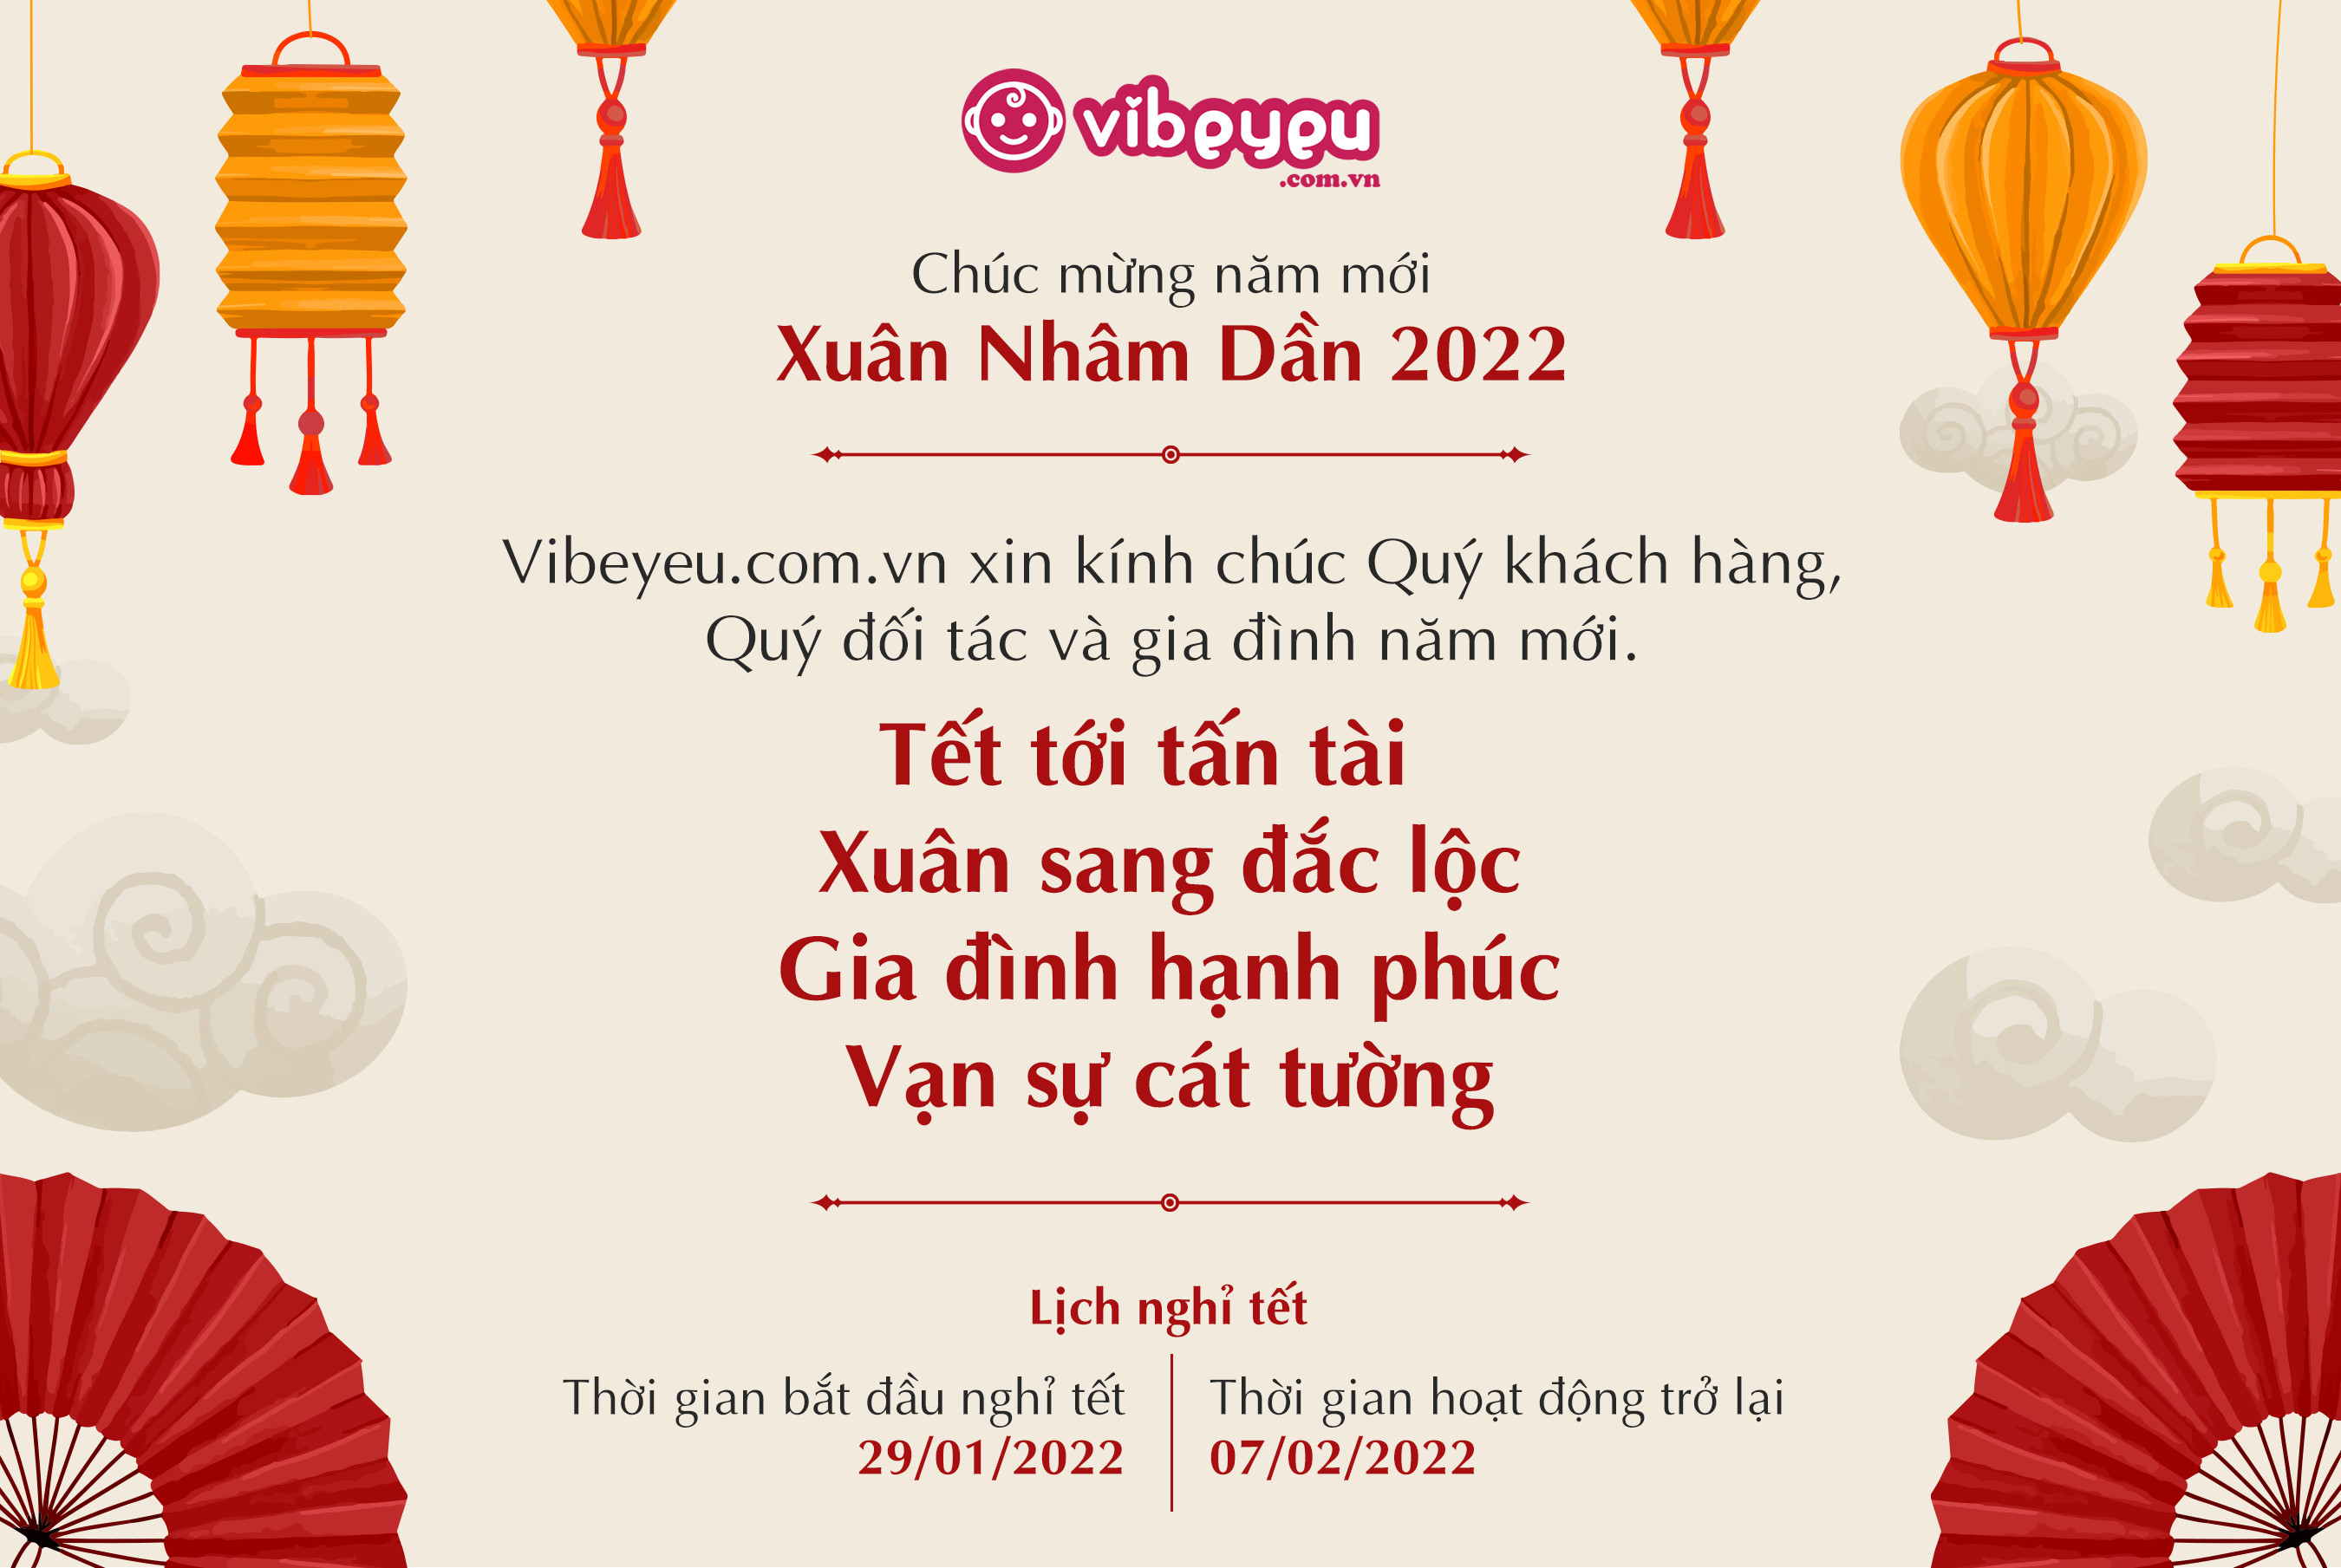 VIBEYEU.COM.VN : Chúc Tết 2022